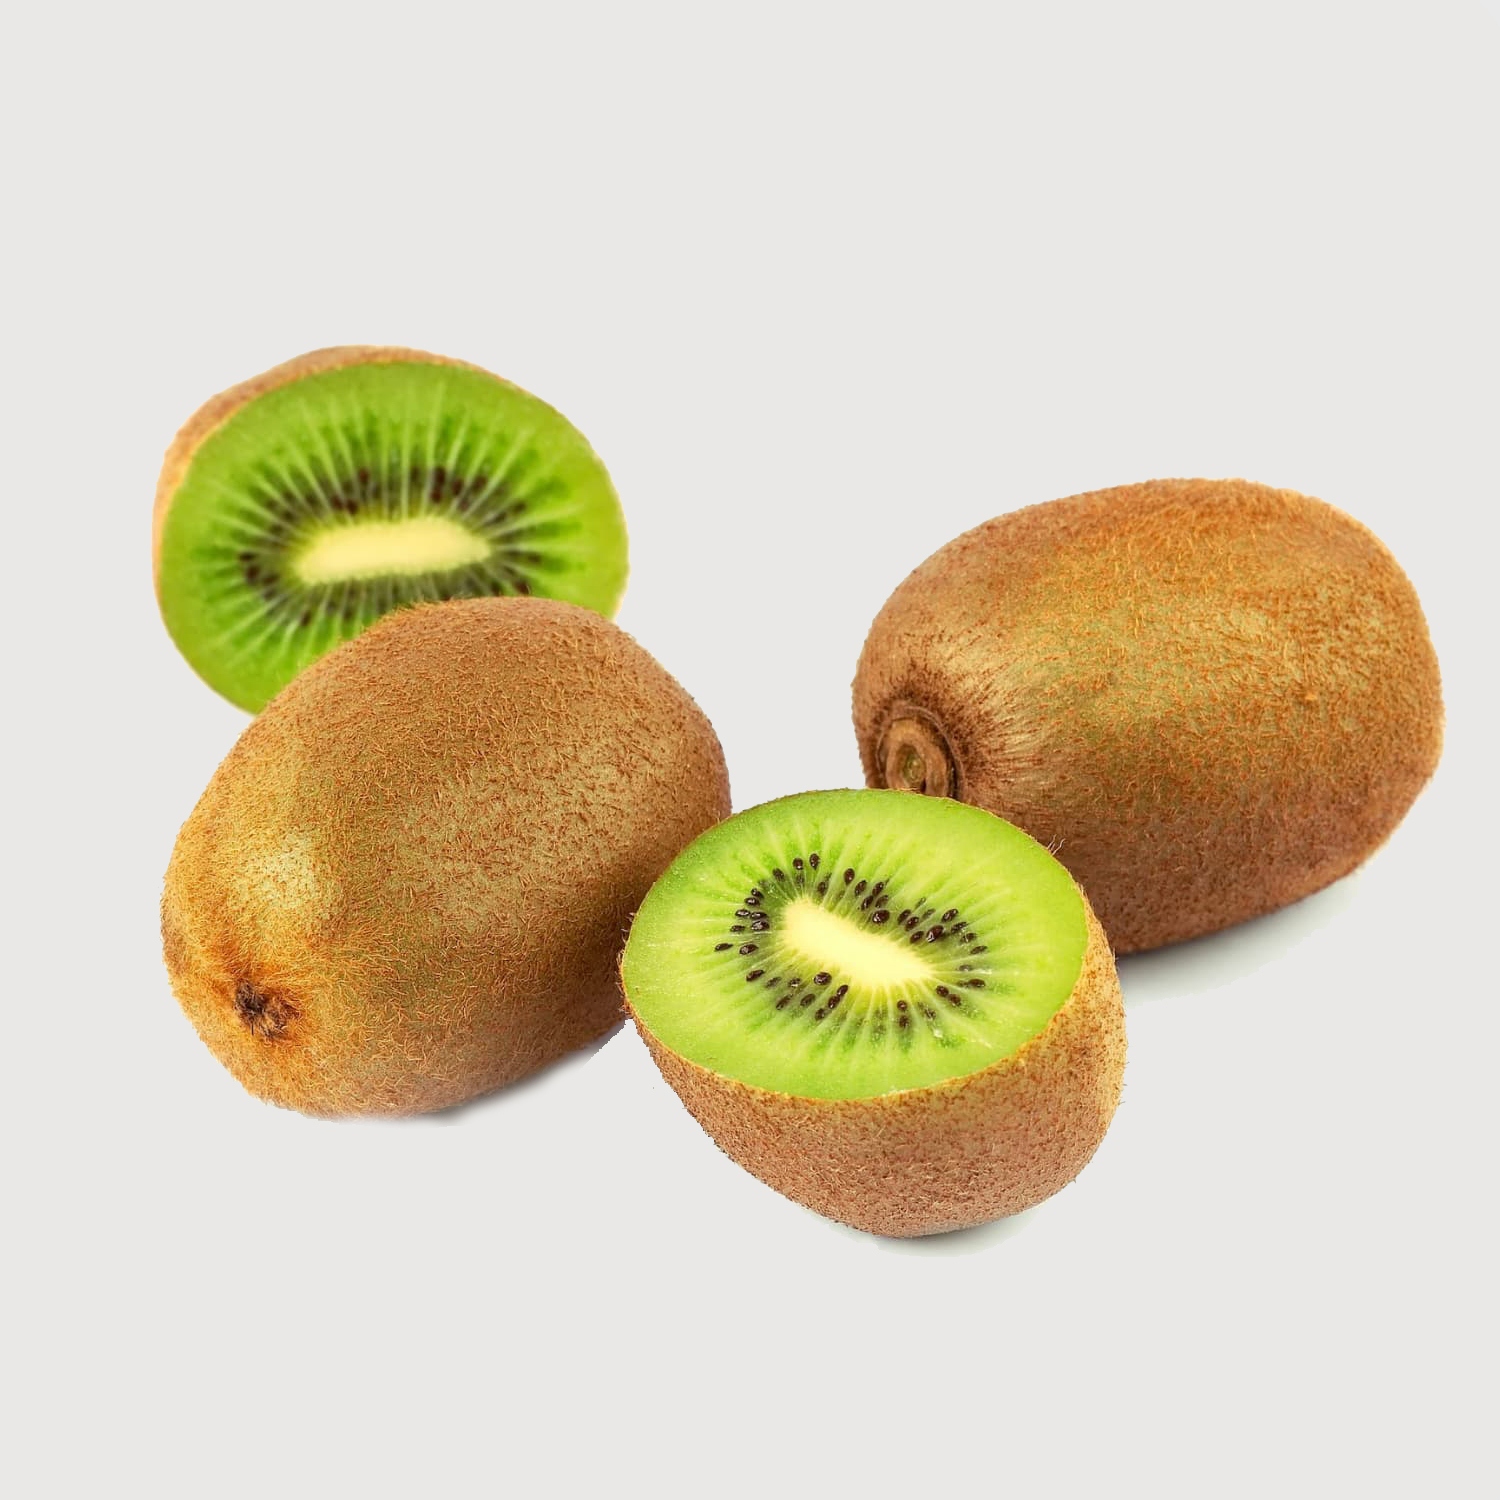 Kiwi / Kiwifruit